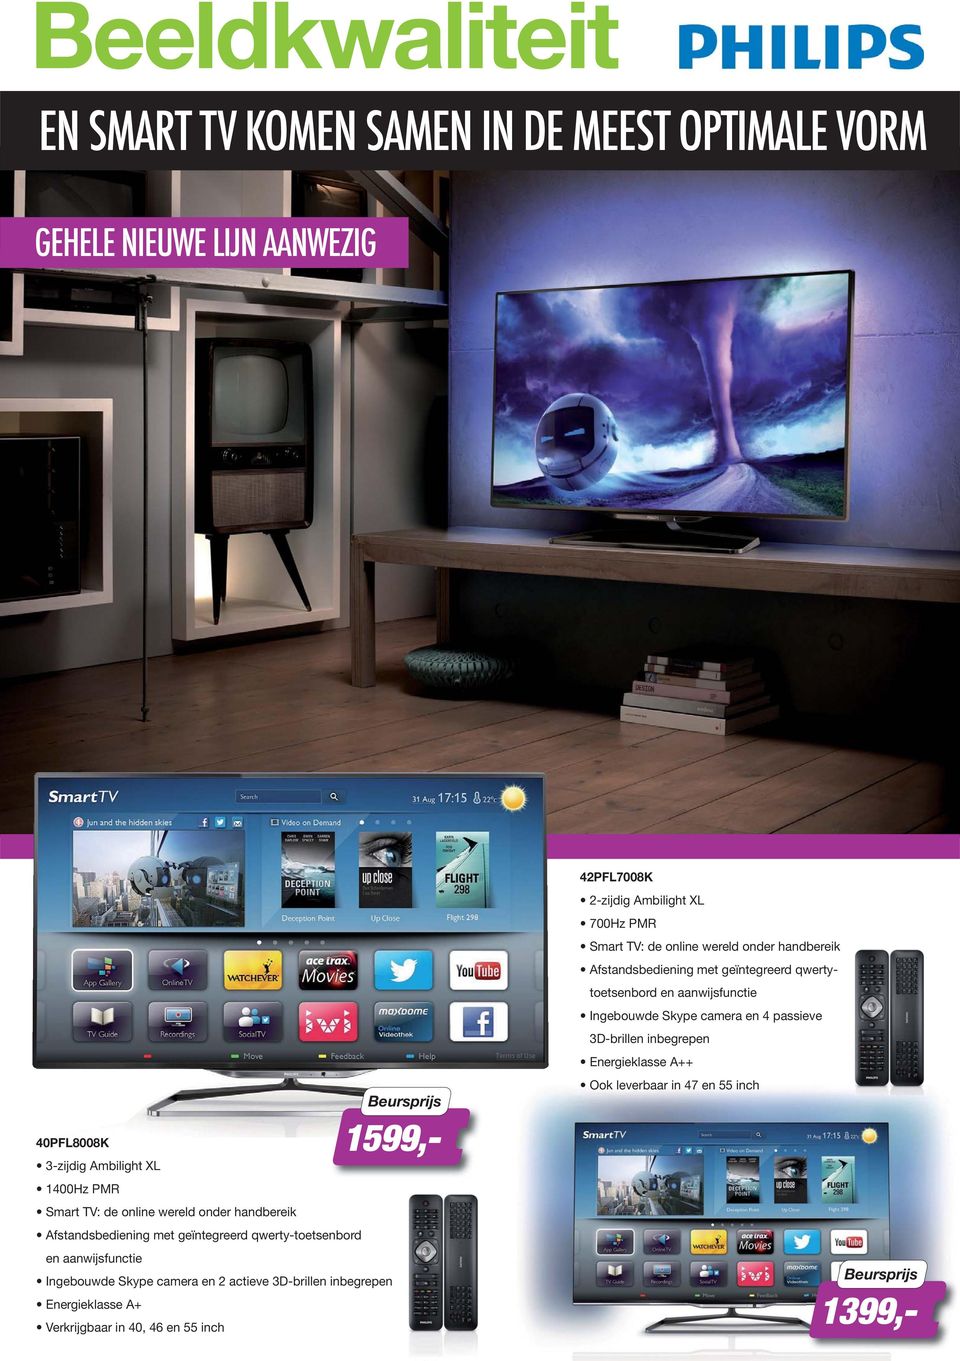 Energieklasse A+ Verkrijgbaar in 40, 46 en 55 inch 1599,- 42PFL7008K 2-zijdig Ambilight XL 700Hz PMR Smart TV: de online wereld onder handbereik